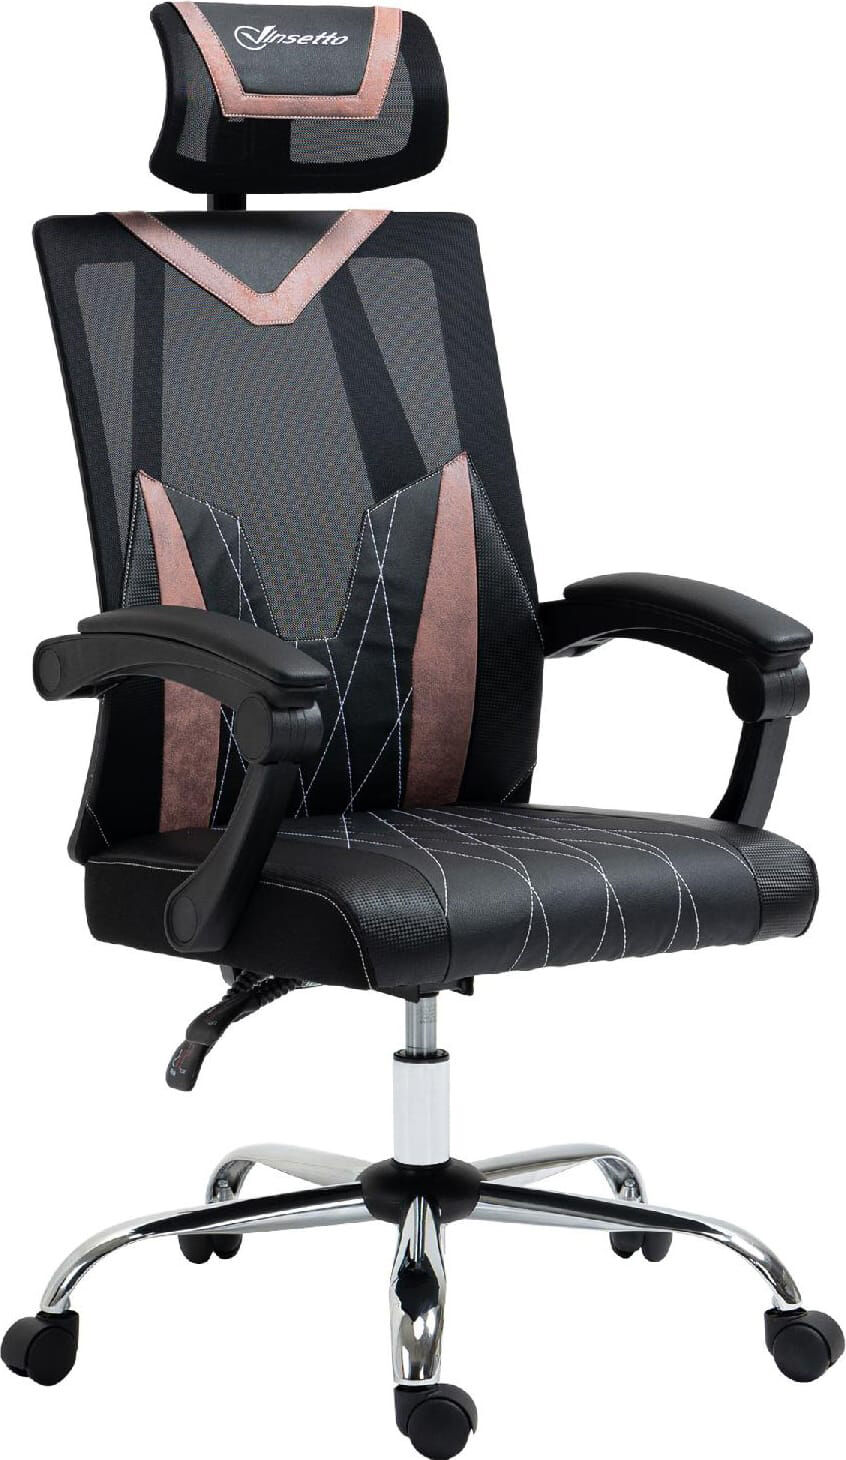 dechome 469pk sedia ergonomica ufficio sedia da scrivania direzionale con rotelle e braccioli reclinabile, girevole e regolabile in altezza colore nero - 469pk